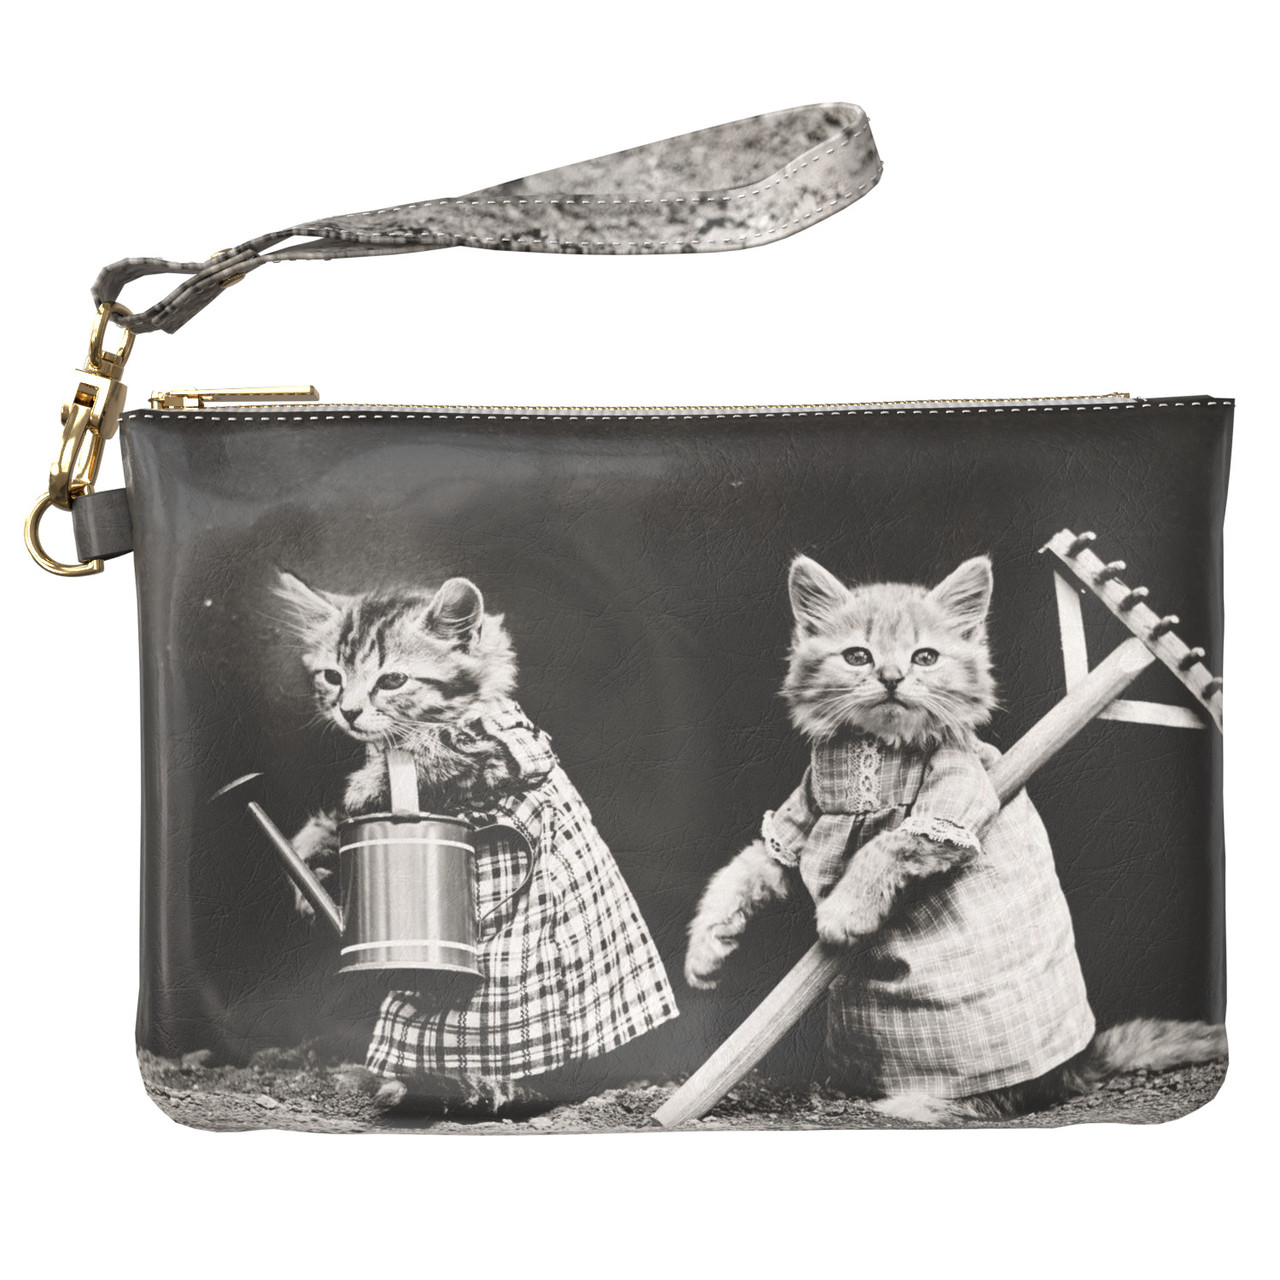 Жіноча косметичка, дорожня сумочка (Чорно-білі кішки) ручної роботи з еко-шкіри